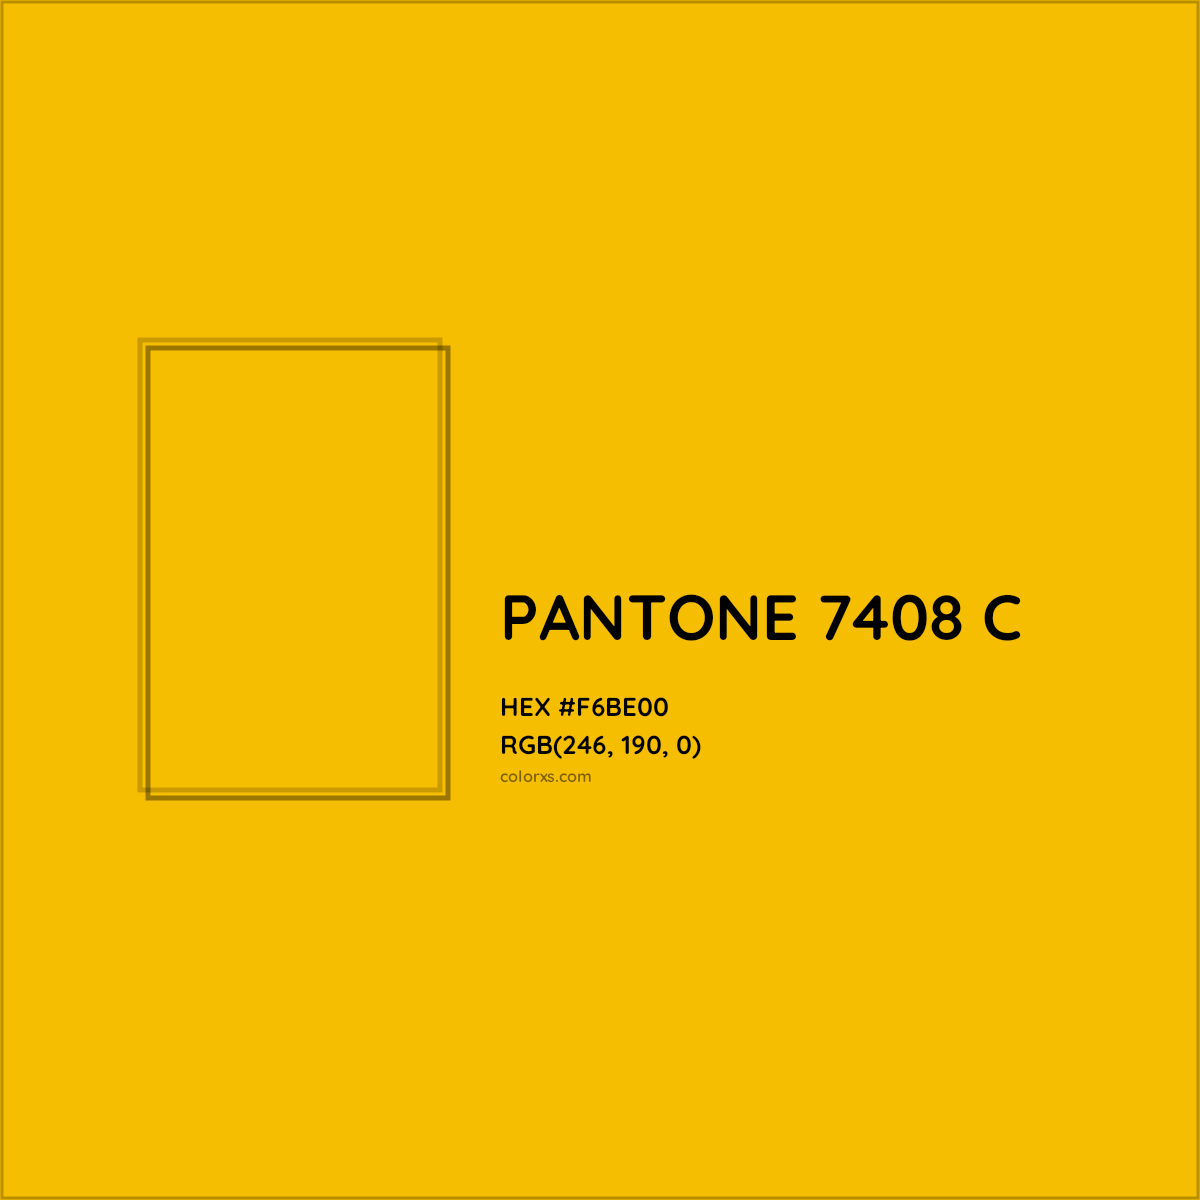 HEX #F6BE00 PANTONE 7408 C CMS Pantone PMS - Color Code